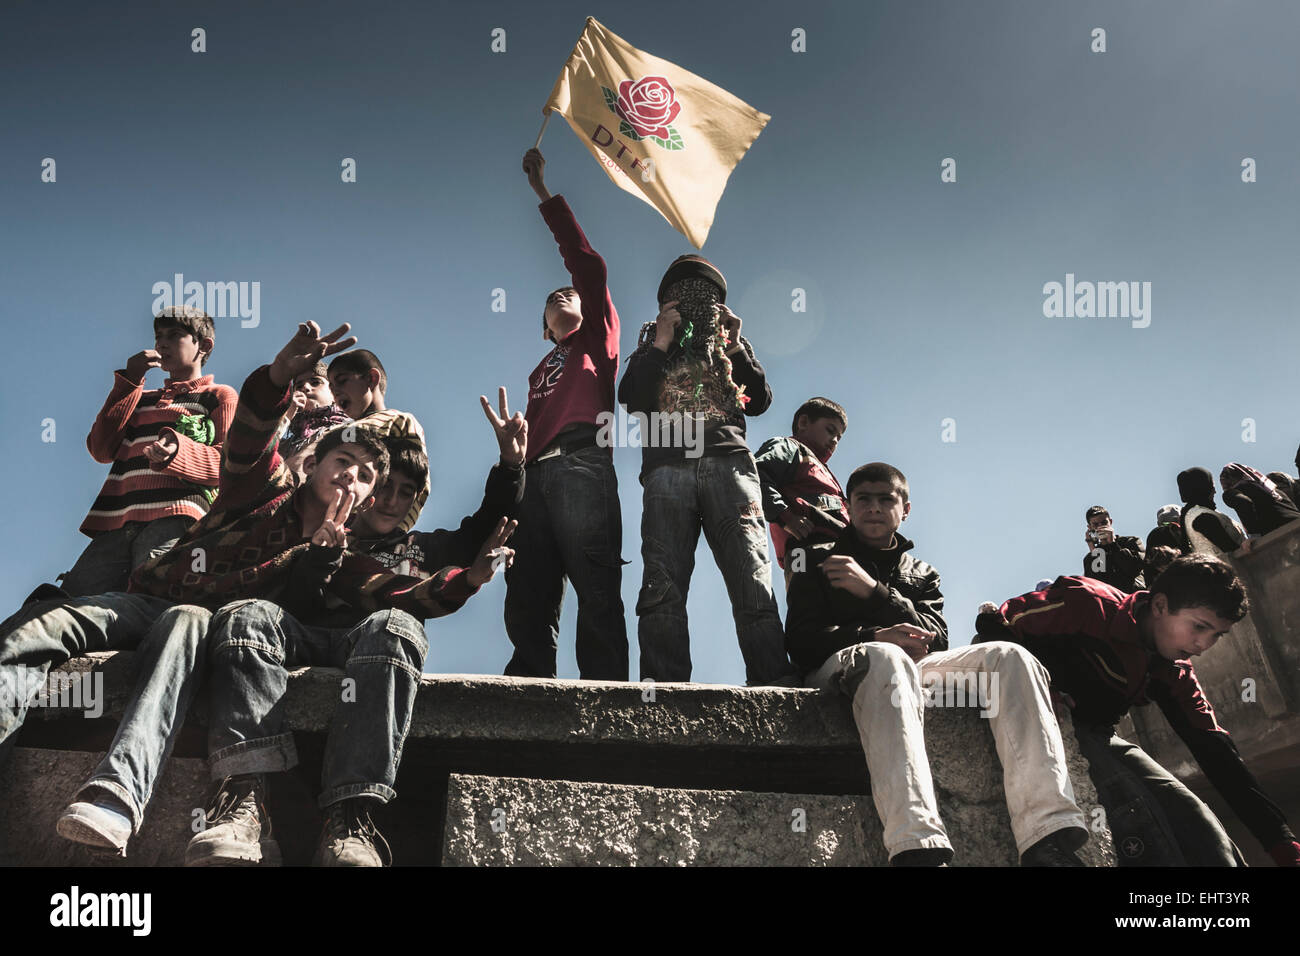 Ogni anno il 21 marzo il popolo curdo celebrare il Newroz. Foto: Newroz in Idil Foto Stock